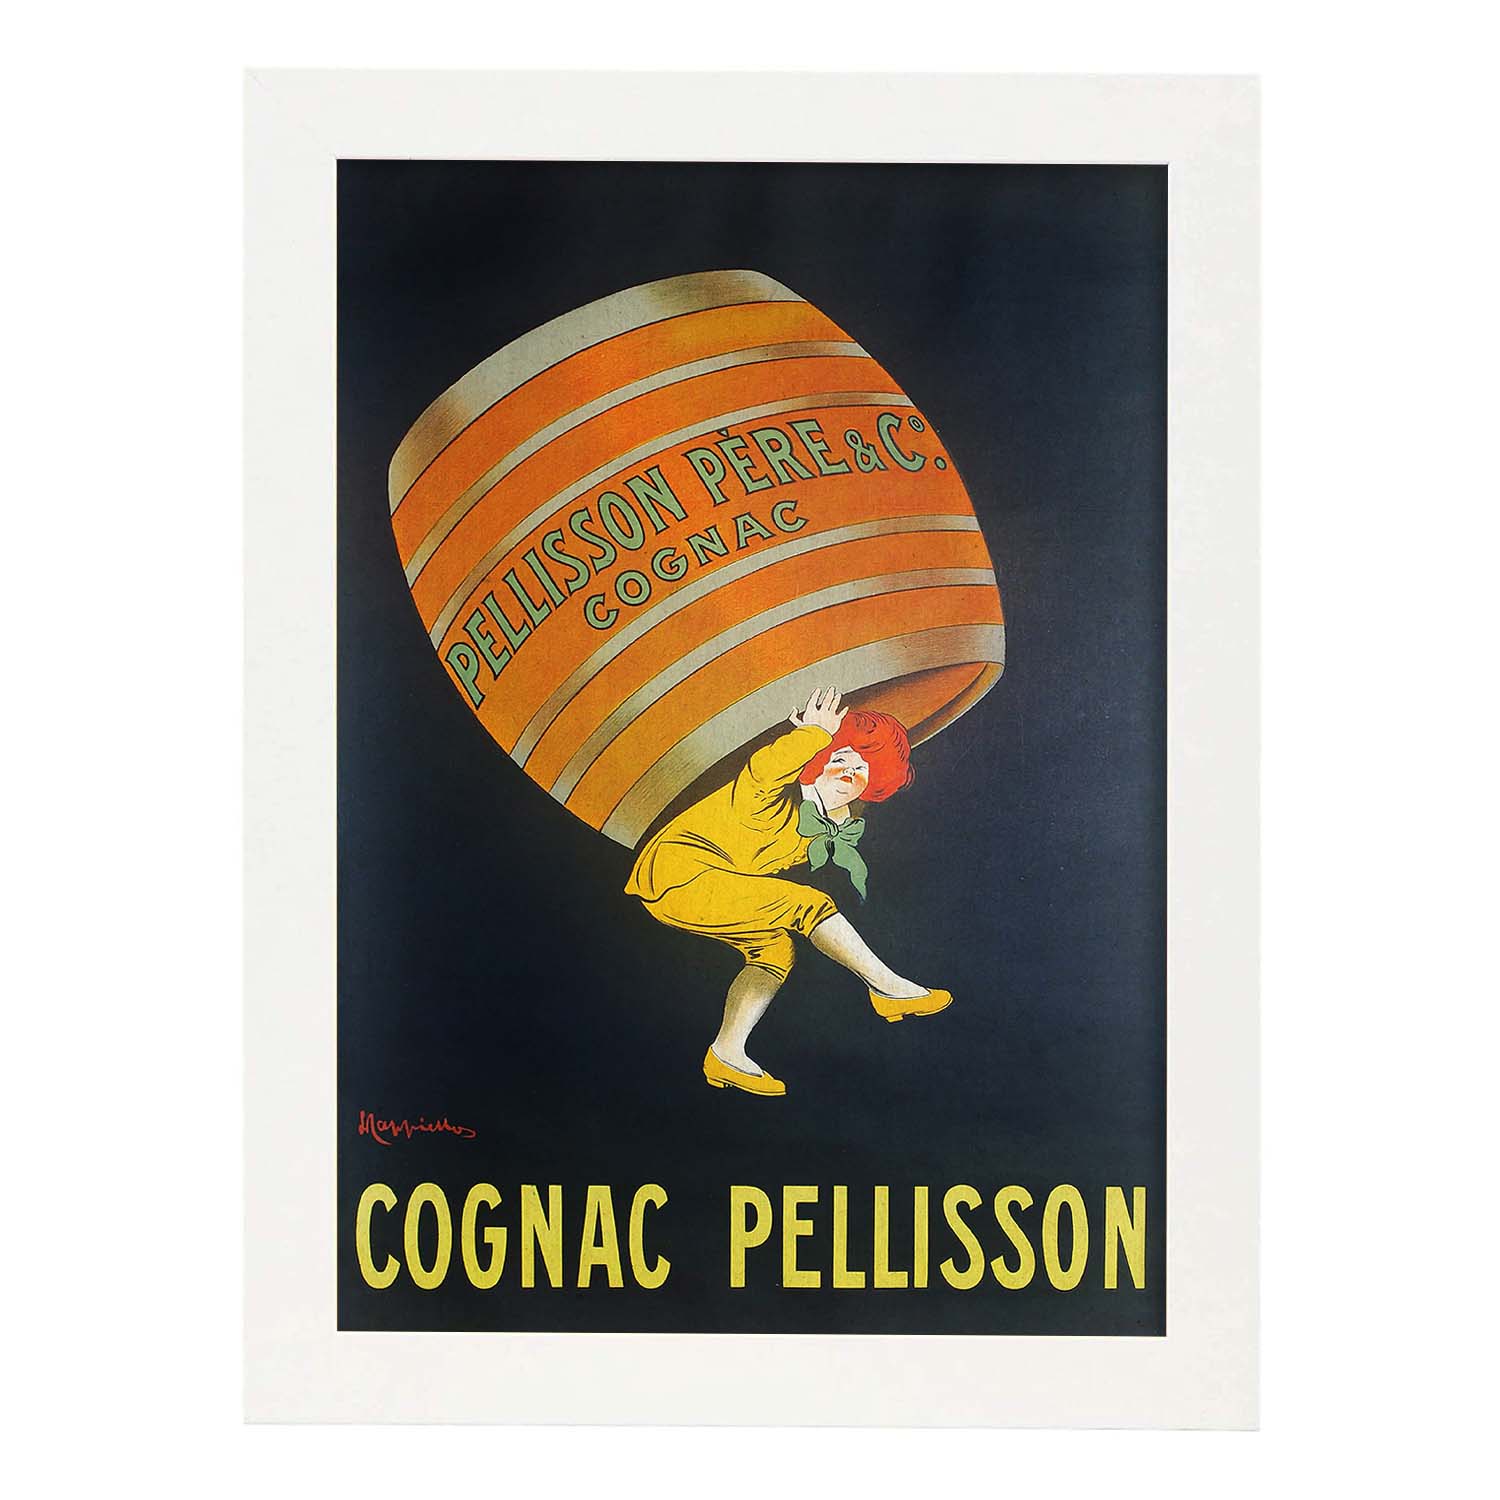 Poster vintage. Anuncio vintage Cognac Pellisson de 1907..-Artwork-Nacnic-A3-Marco Blanco-Nacnic Estudio SL